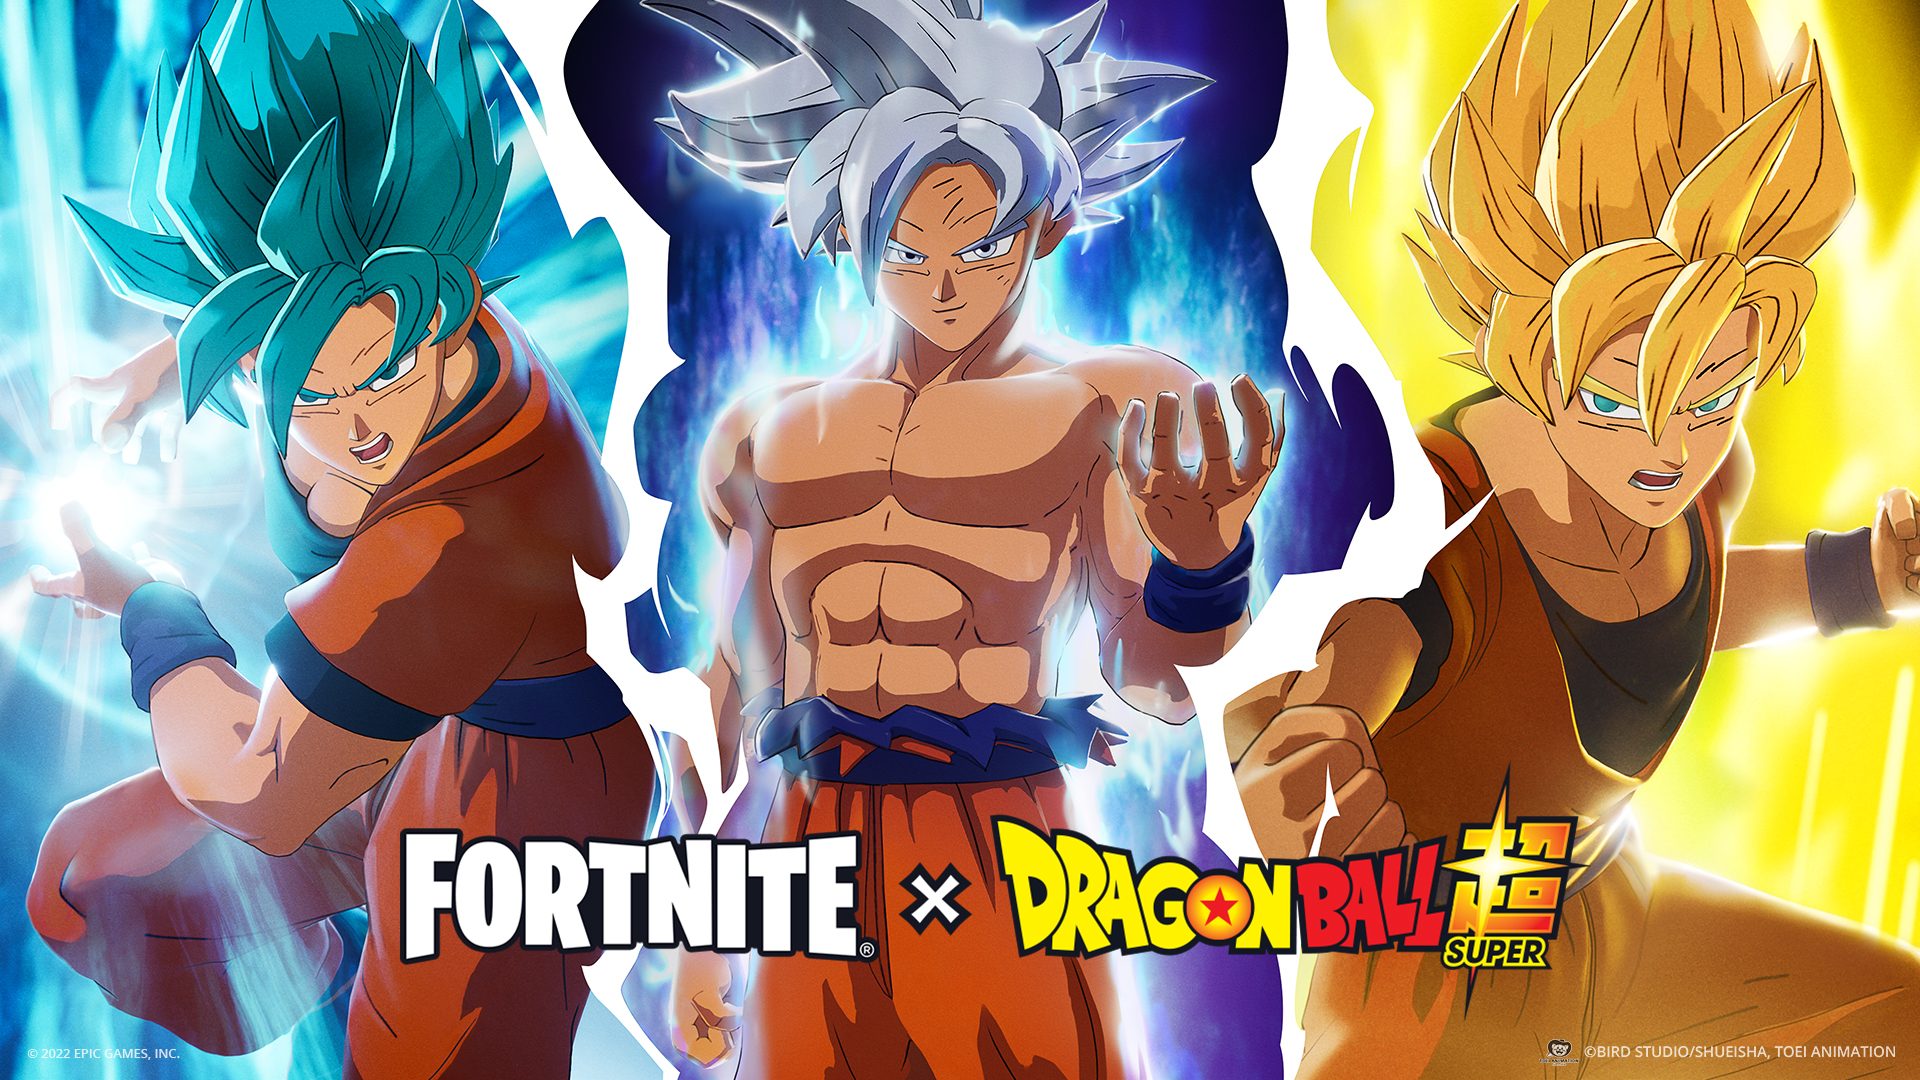 Goku powers up Fortnite x Dragon Ball, live today